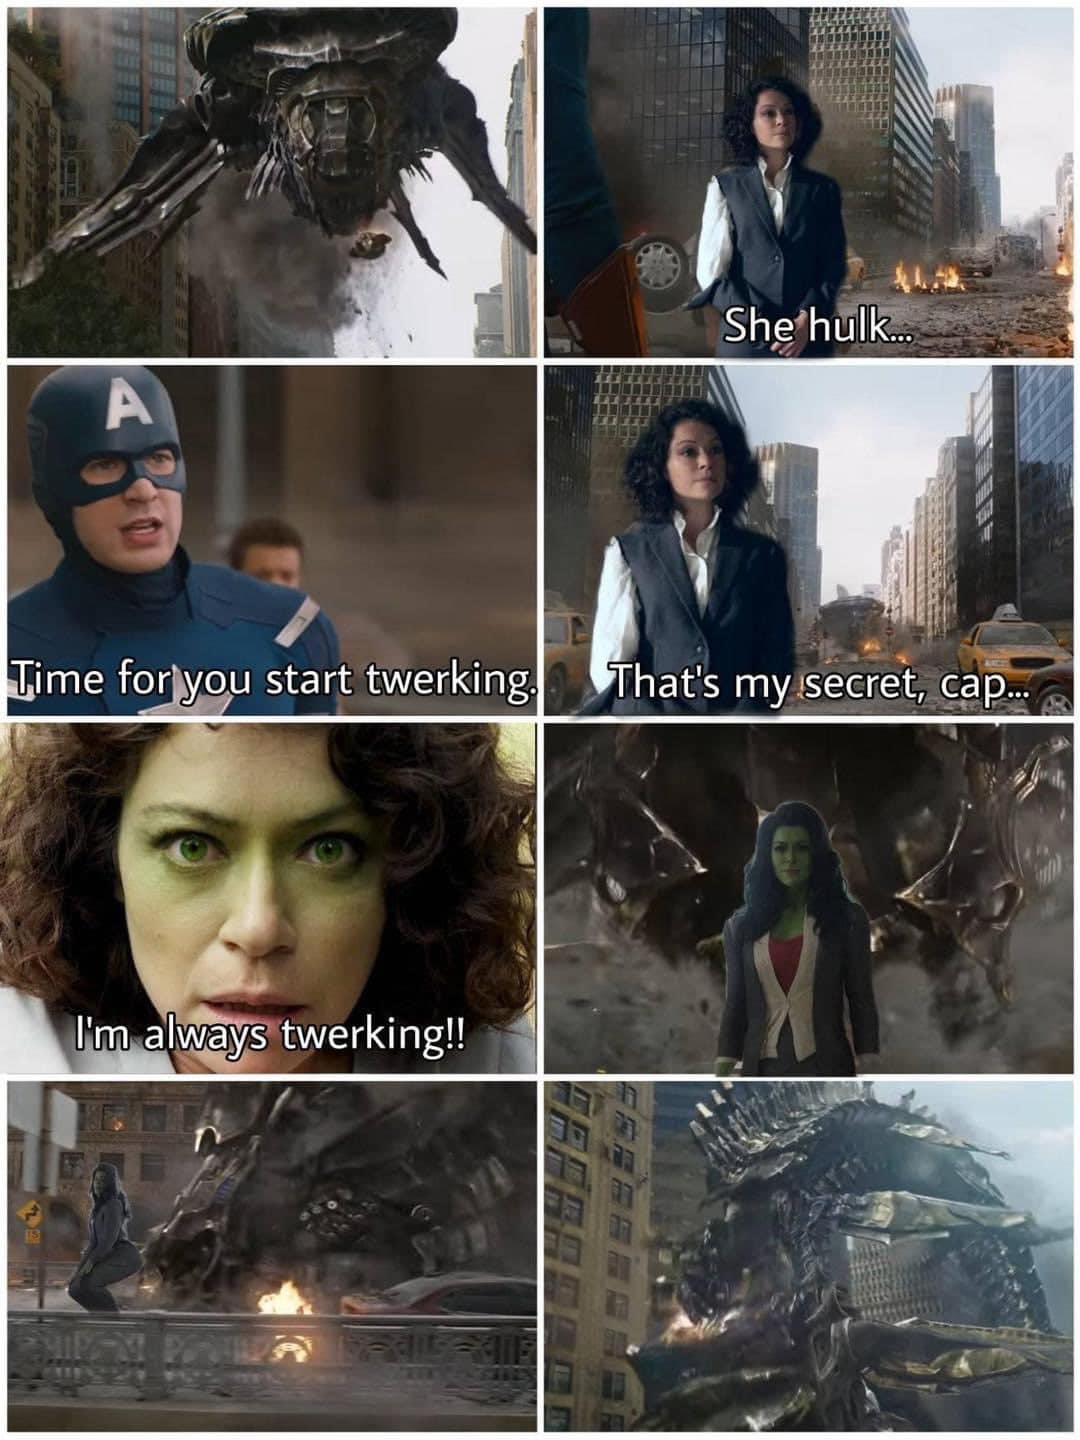 she-hulk memes twerking